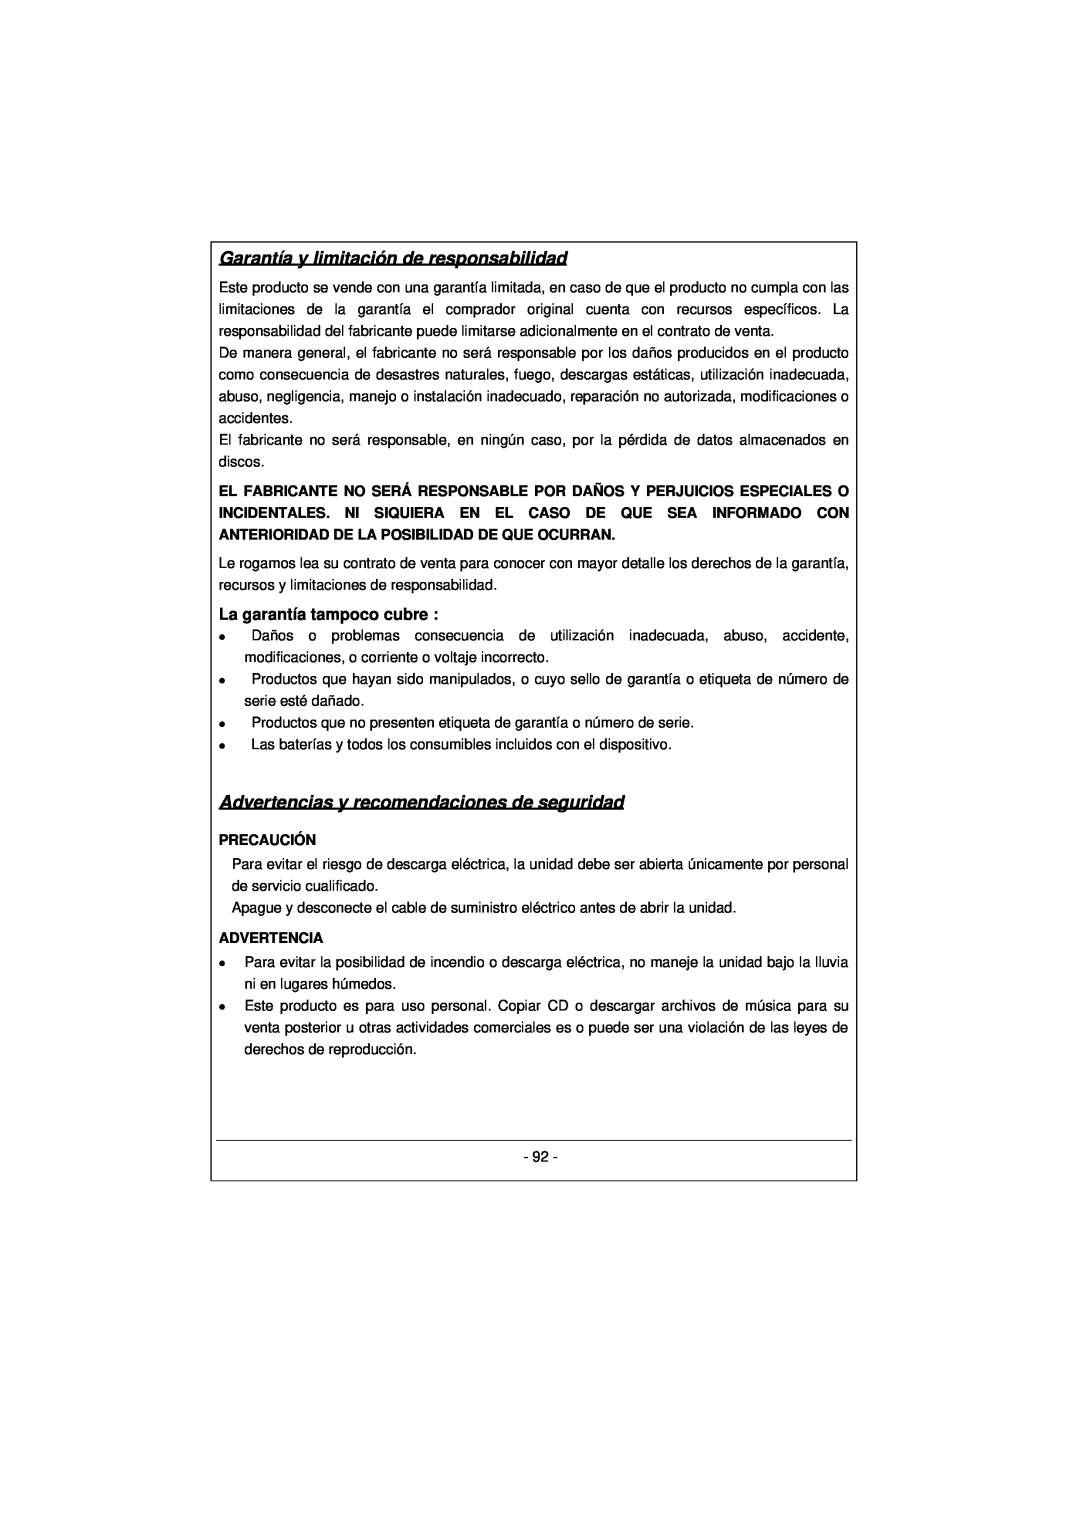 Archos 100628 manual Garantía y limitación de responsabilidad, Advertencias y recomendaciones de seguridad 